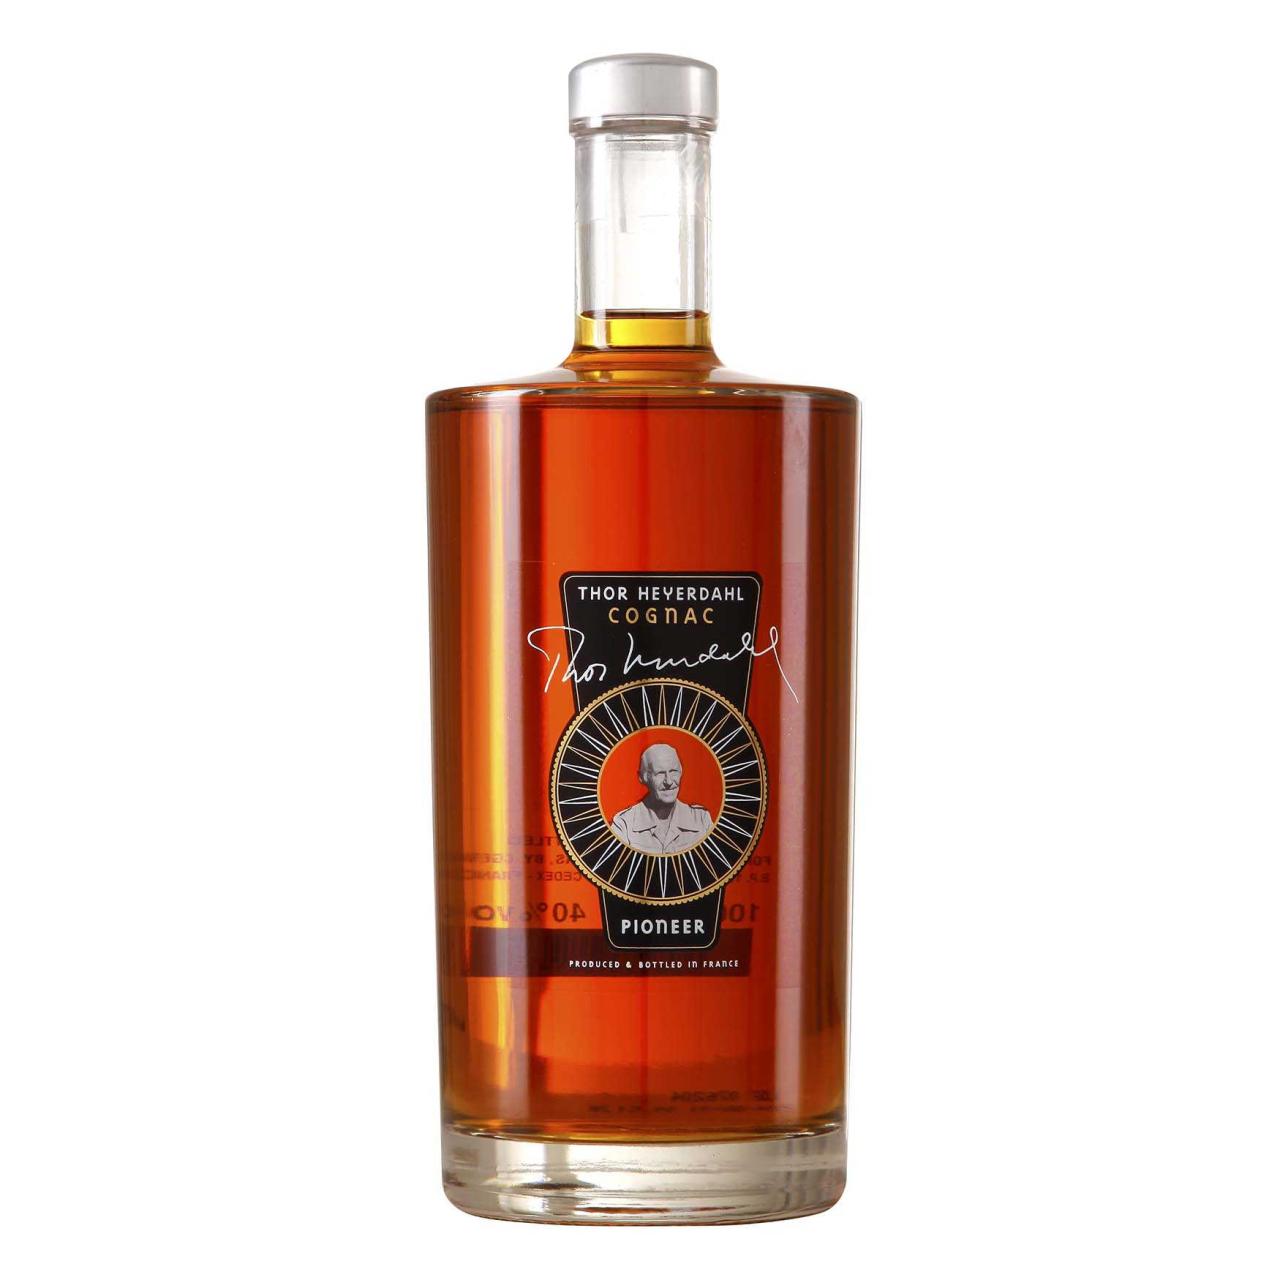 THOR HEYERDAHL Cognac Pioneer 40% 1 liter